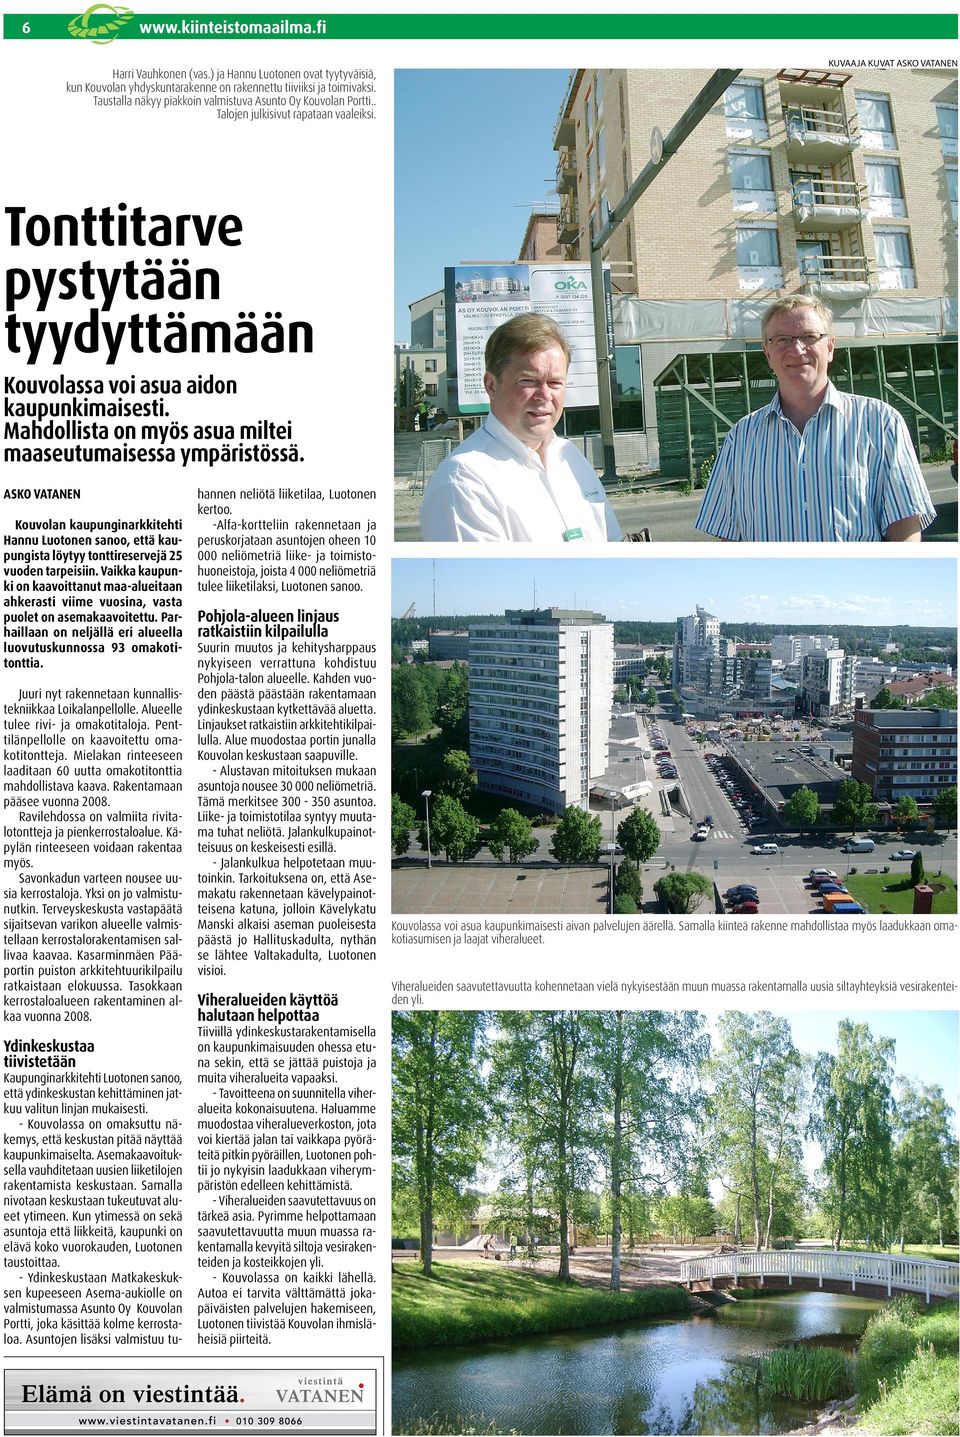 Kouvolan kaupunginarkkitehti Hannu Luotonen sanoo, että kaupungista löytyy tonttireservejä 5 vuoden tarpeisiin.